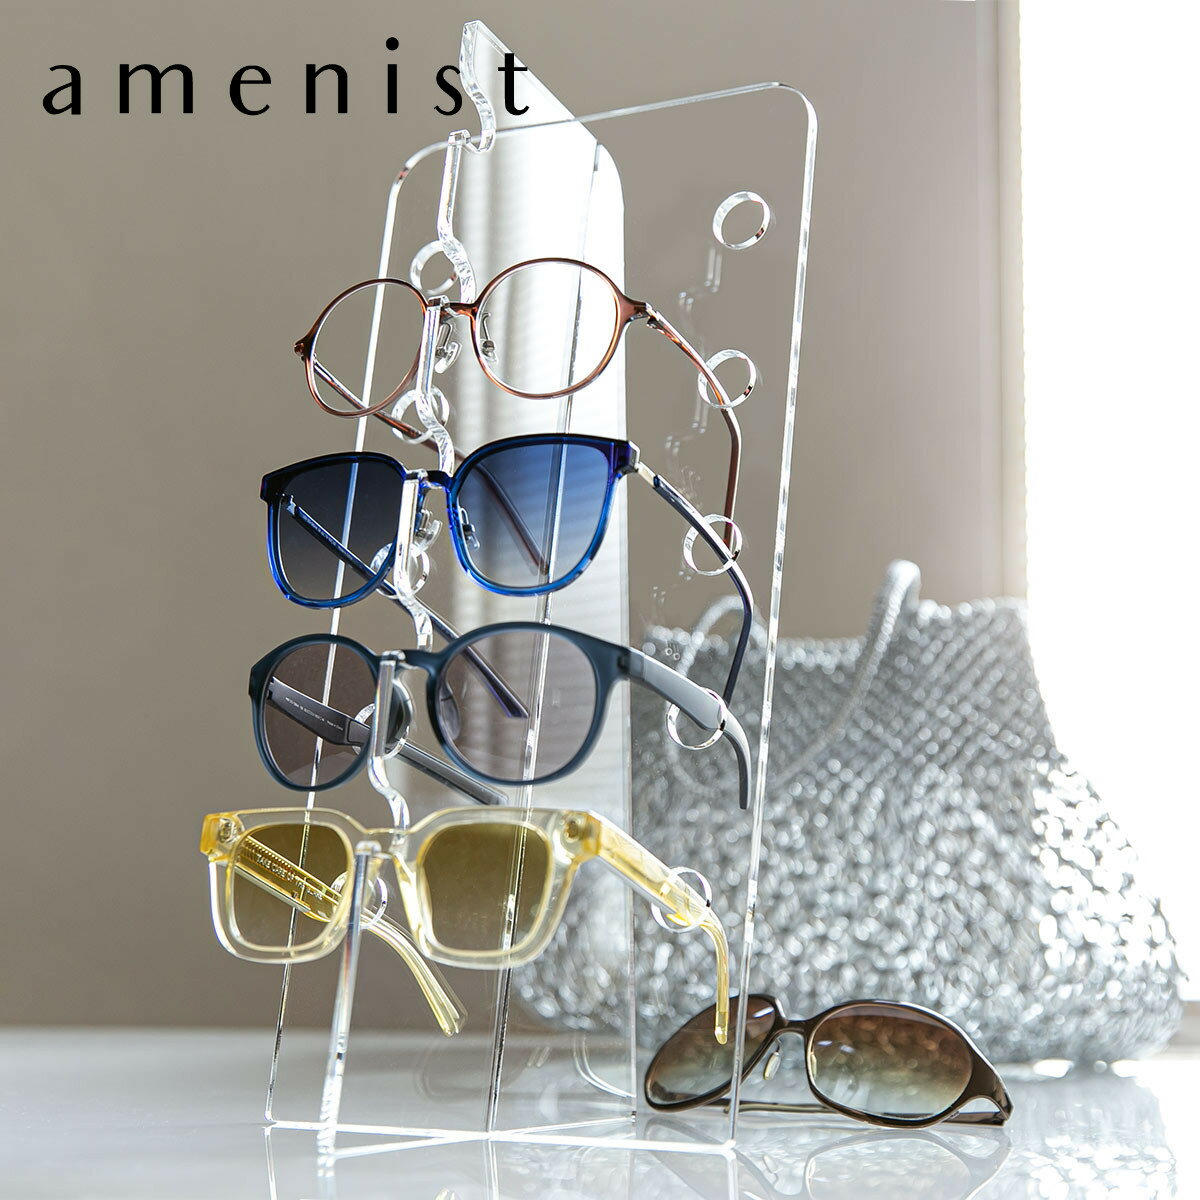  メガネスタンド amenist アクリル製 日本製 （ 眼鏡スタンド 5本 収納 めがね メガネ スタンド ディスプレイ 飾る 複数 アクリル アメニスト 眼鏡 メガネ置き 透明 おしゃれ コレクション サングラス ） 